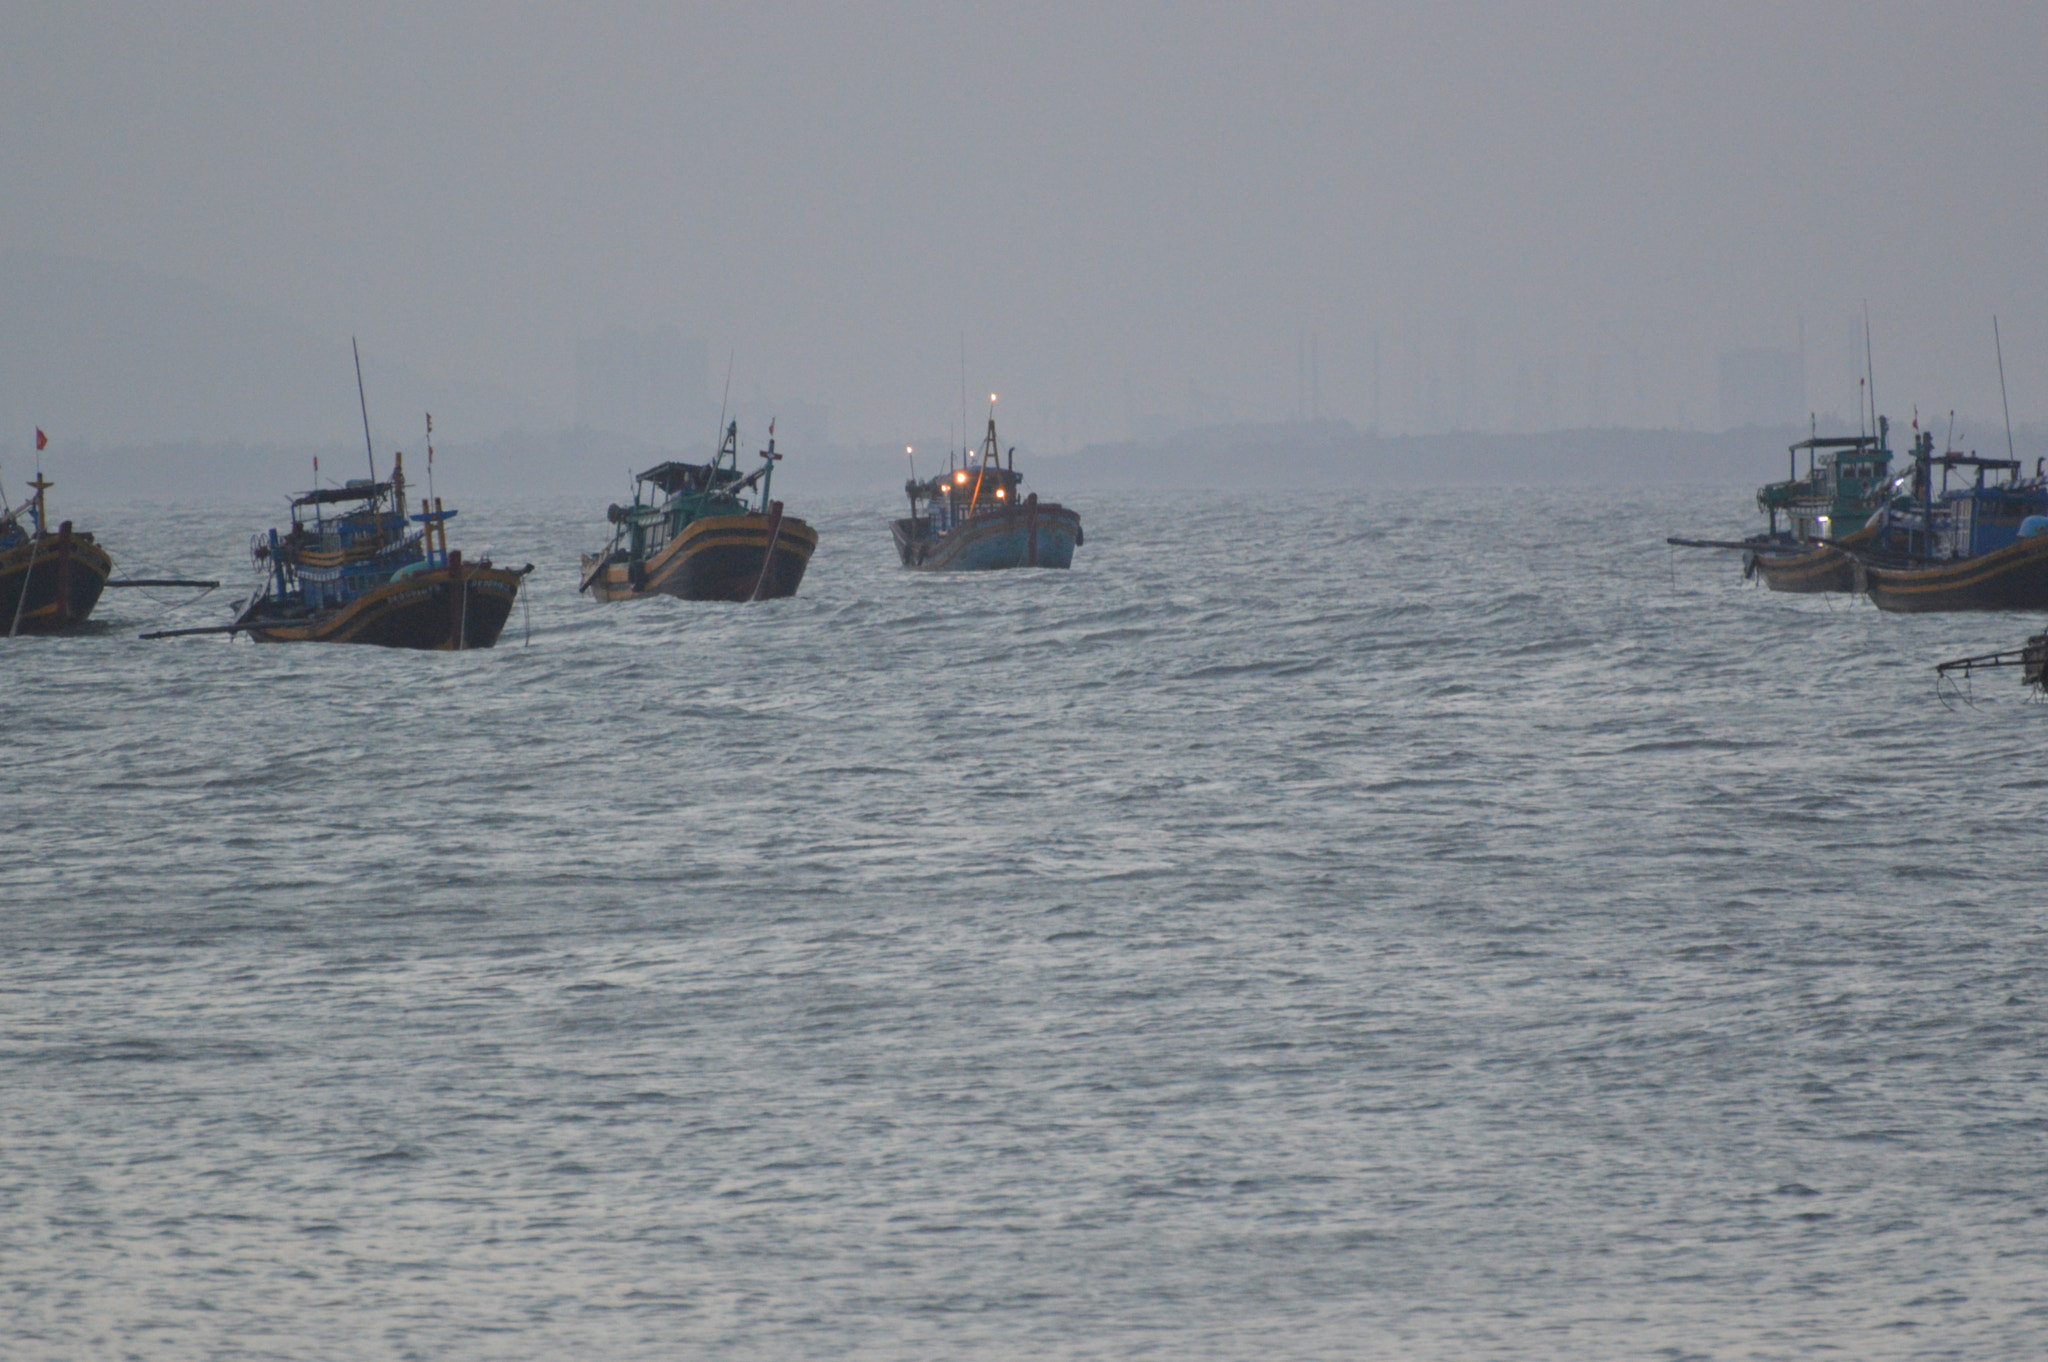 Nikon D3200 sample photo. Fishing boats at anchor photography